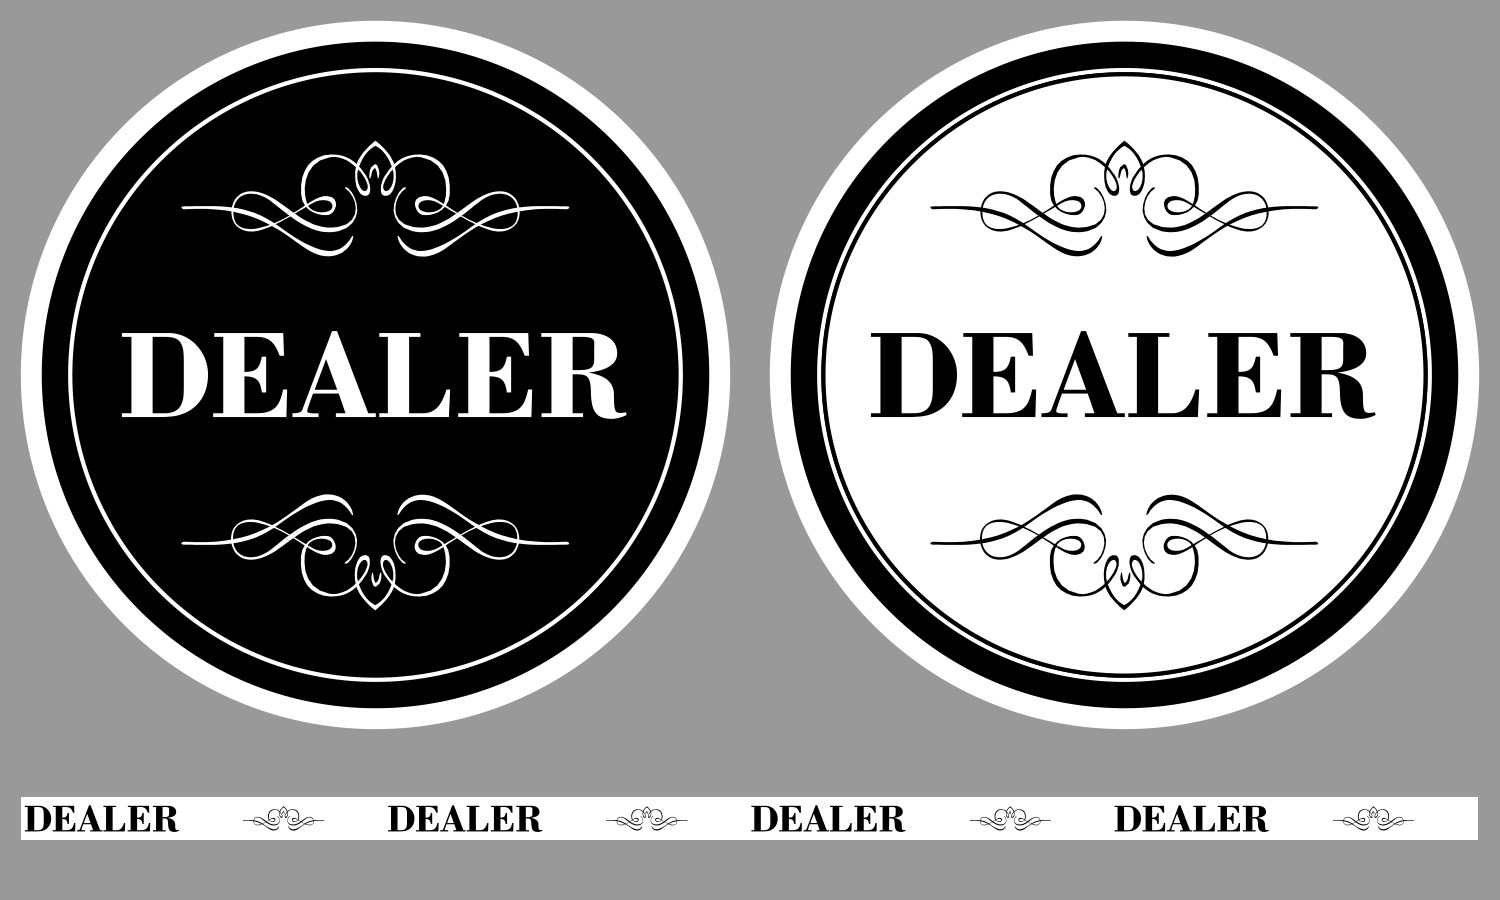 dealer-buttons.jpg